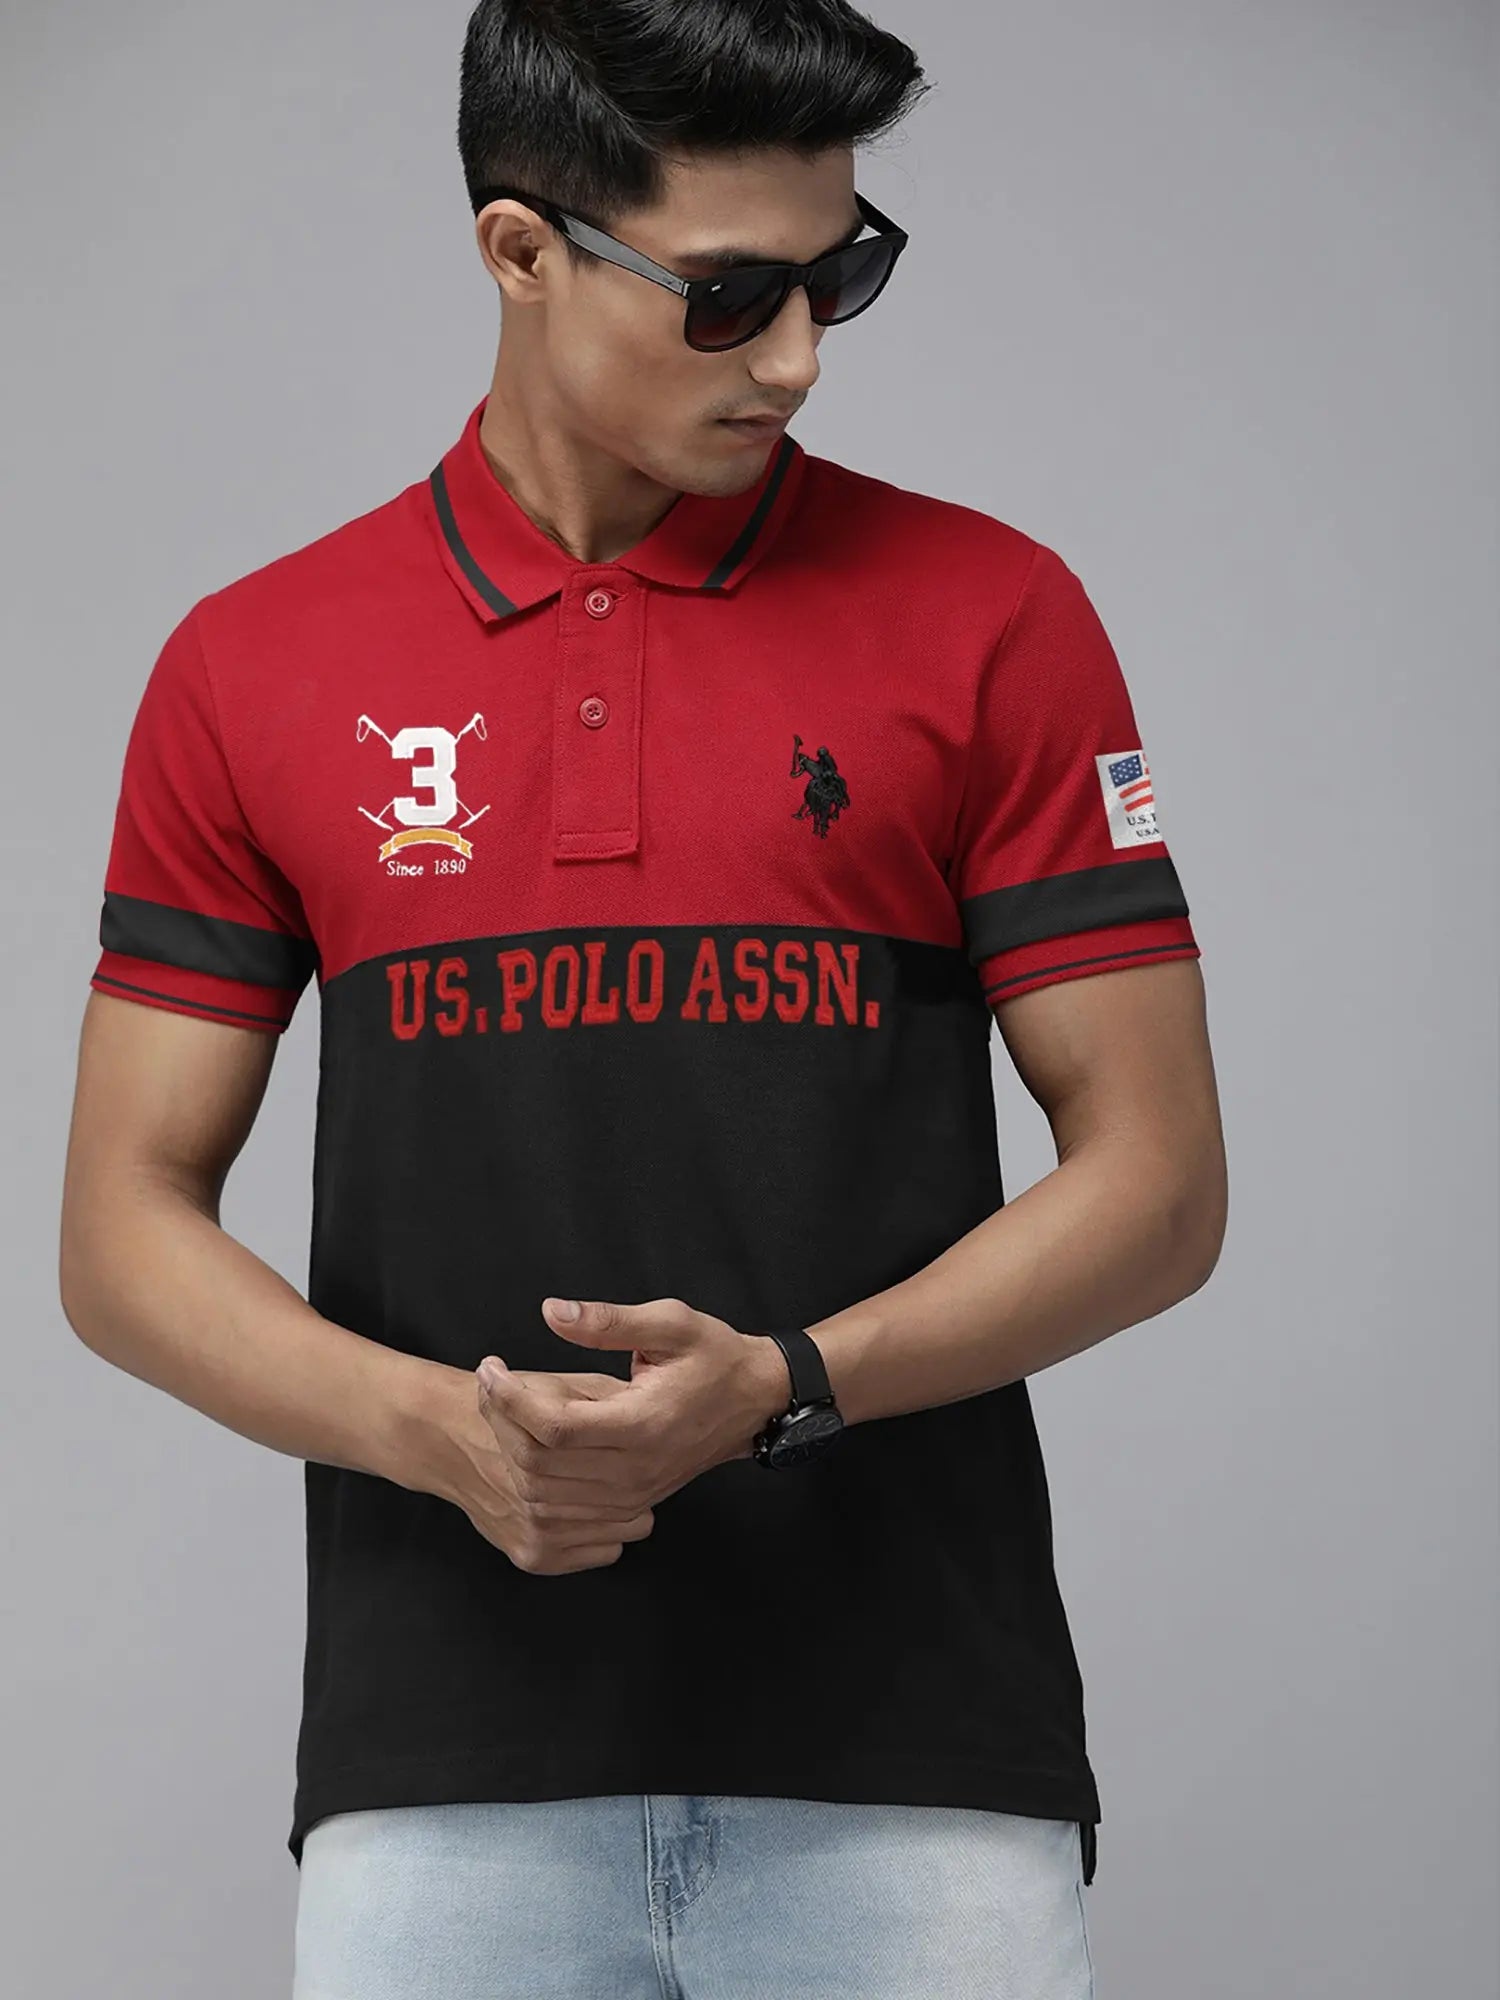 Summer Polo Shirt Men-Red & Black-BE14473 - BrandsEgo.Com